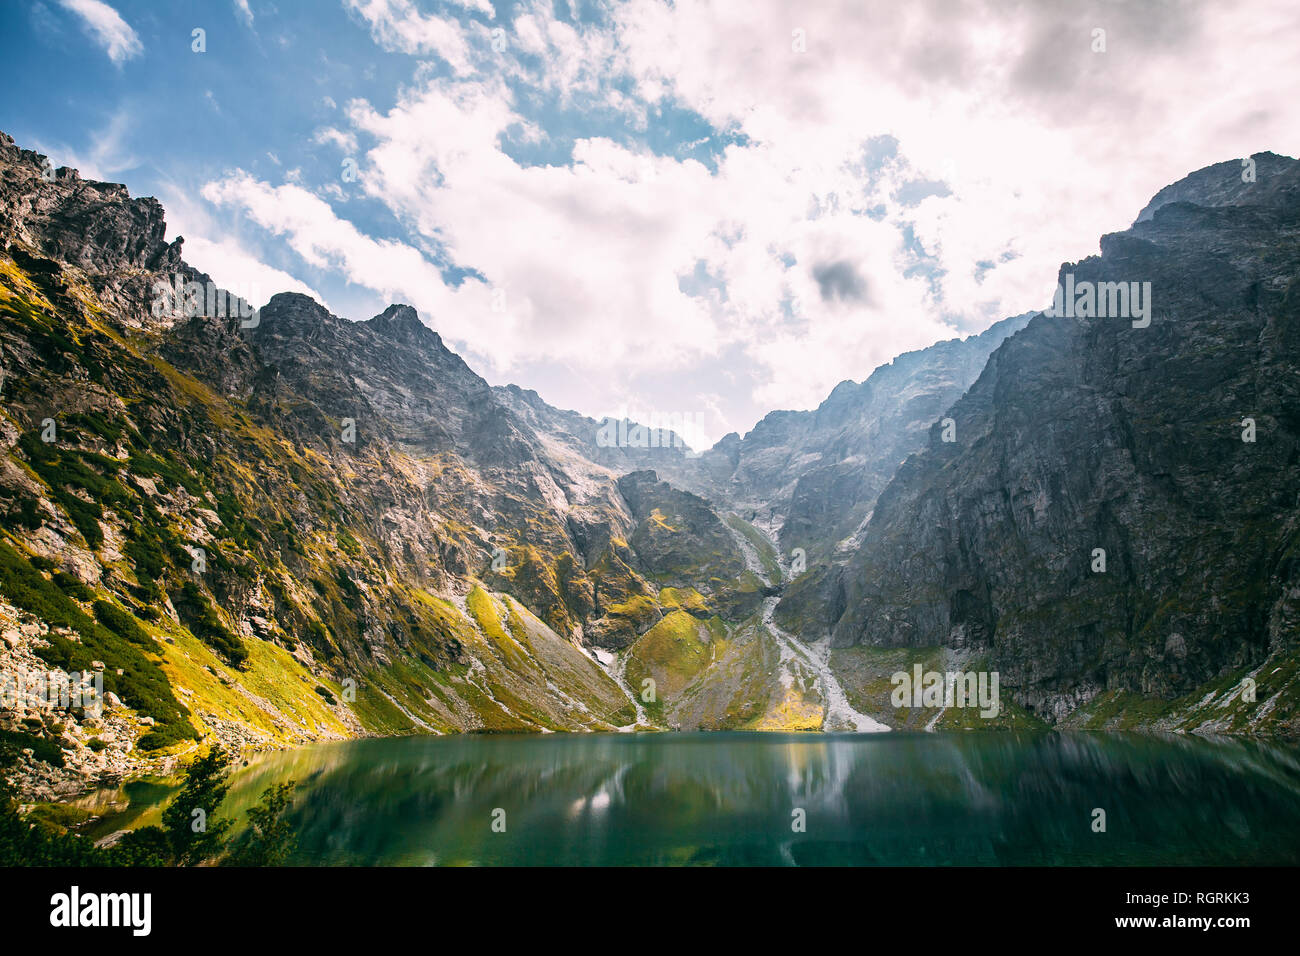 Parco nazionale dei Alti Tatra, Polonia. Lago calmo Czarny Staw sotto Rysy e Montagna estate paesaggio. Bellissima vista panoramica del lago. Patrimonio Mondiale UNESCO Sit Foto Stock